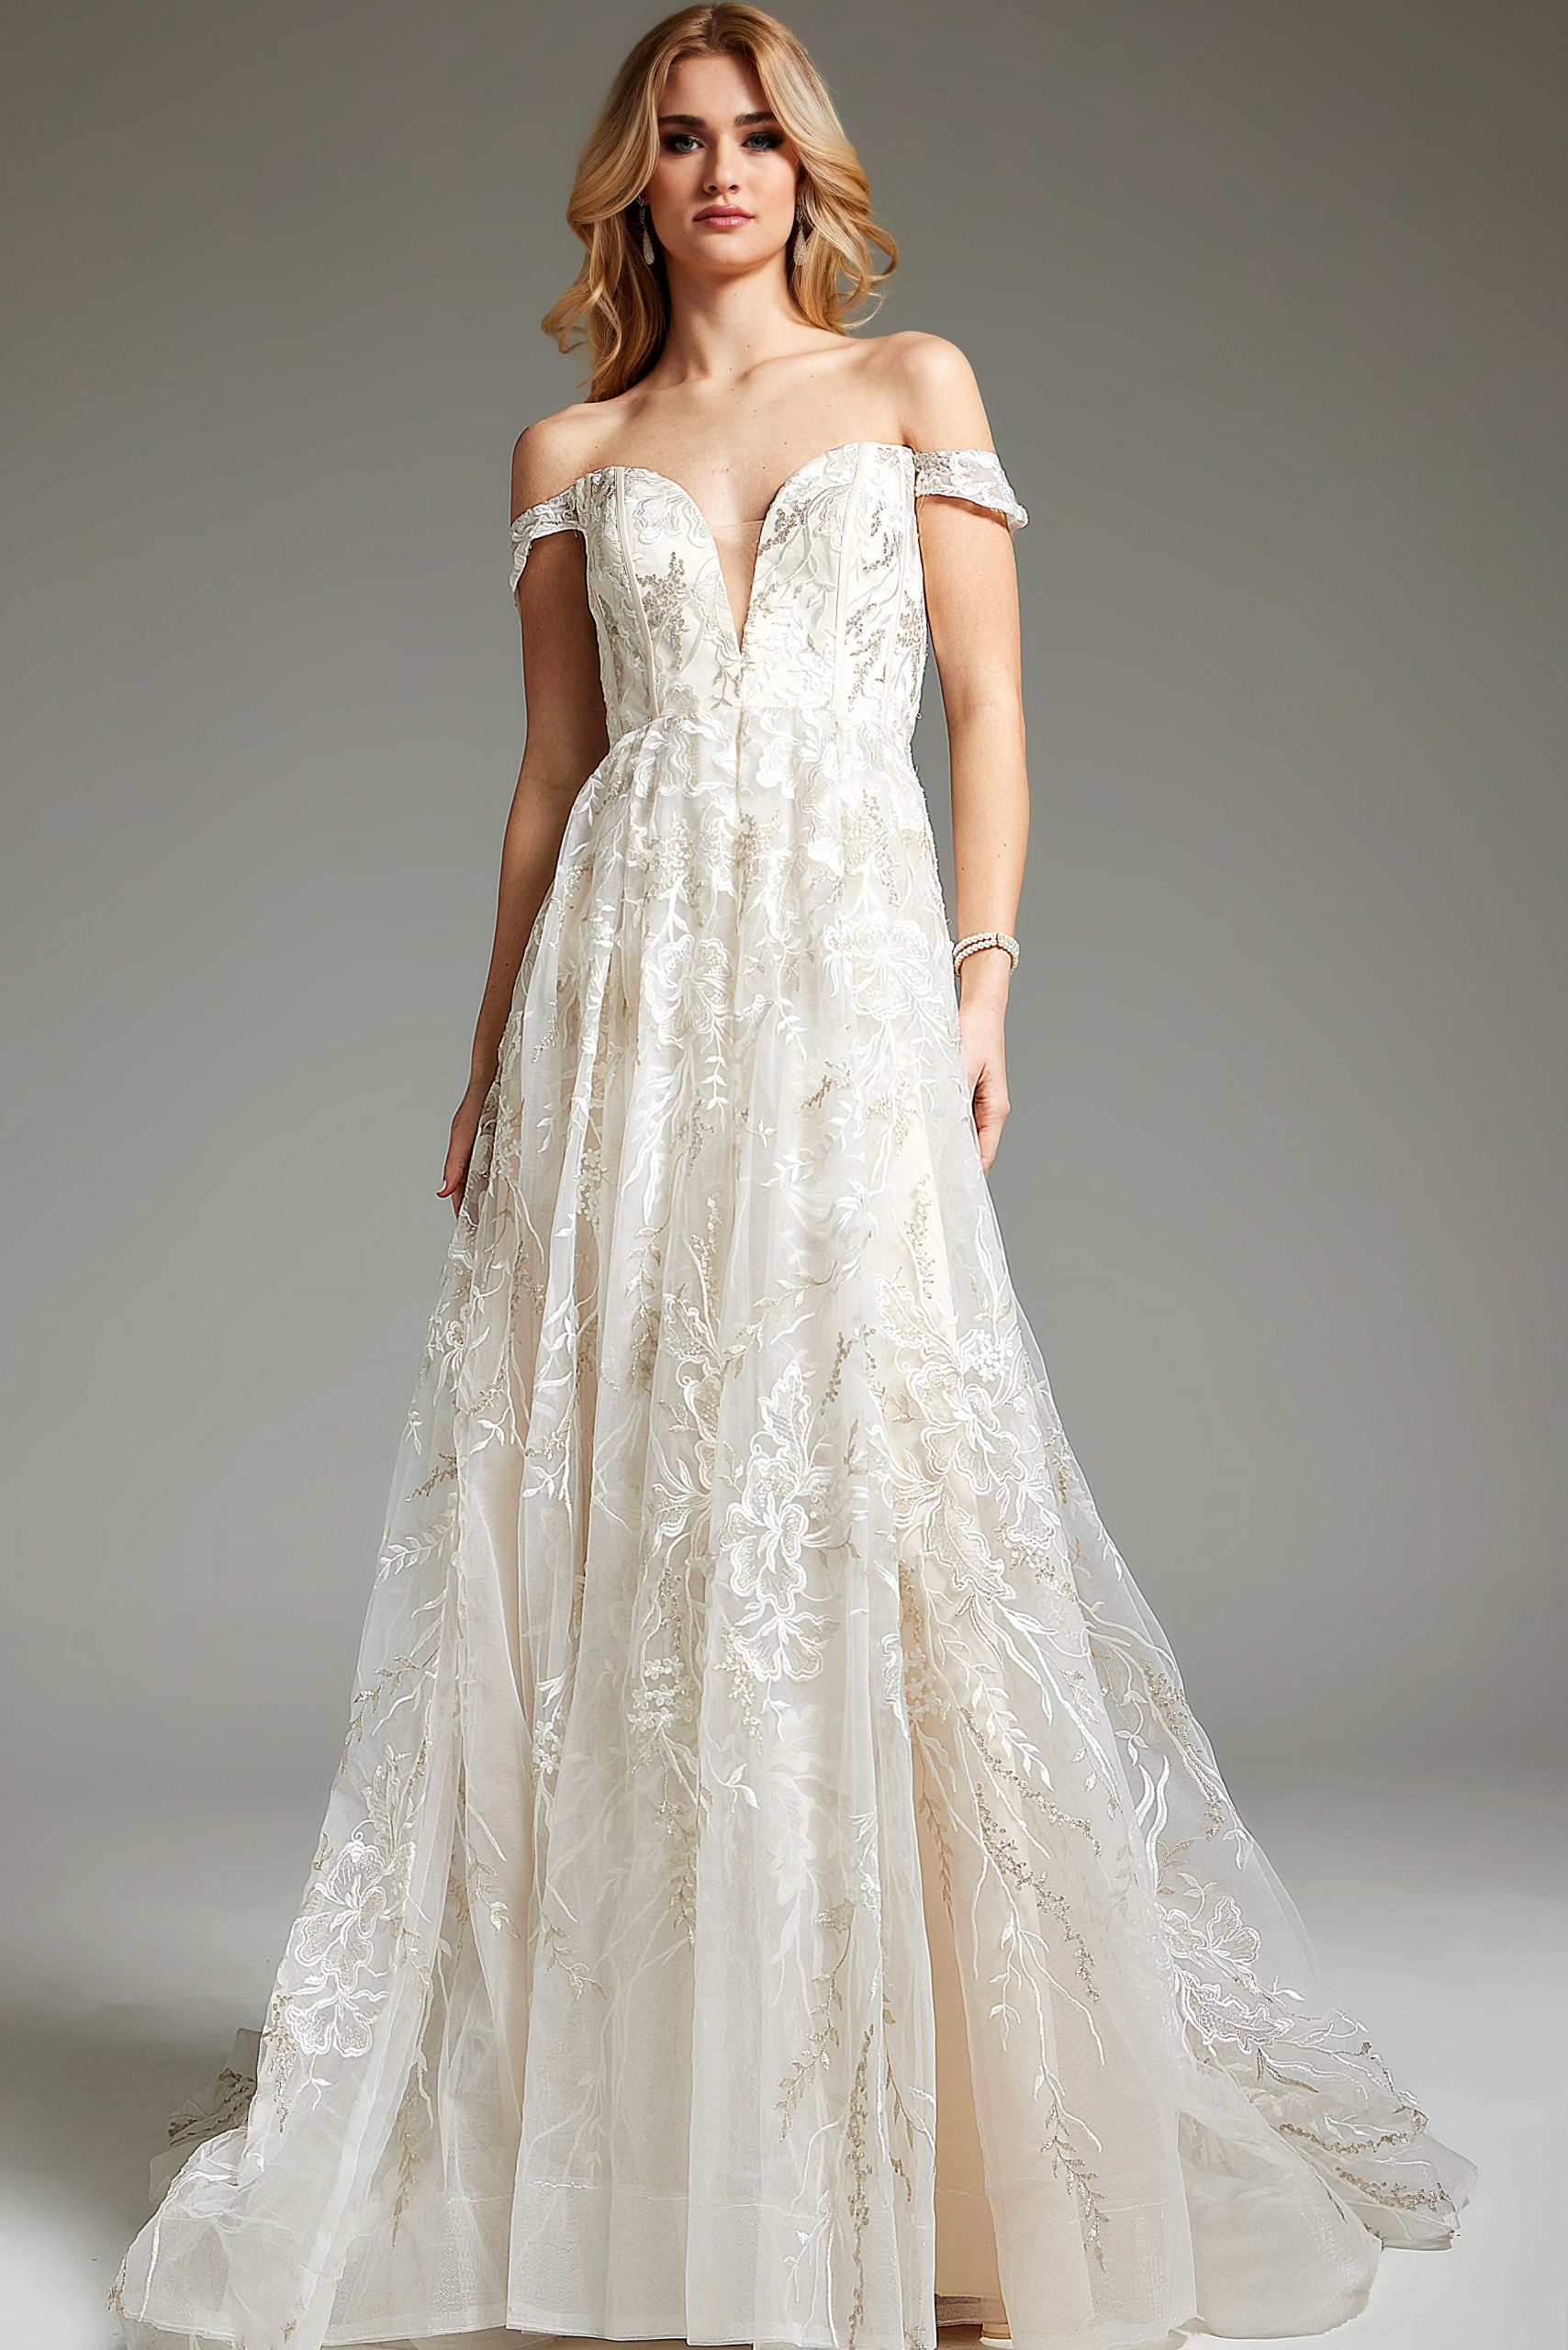 Ivory off the Shoulder Wedding Dress JB220001